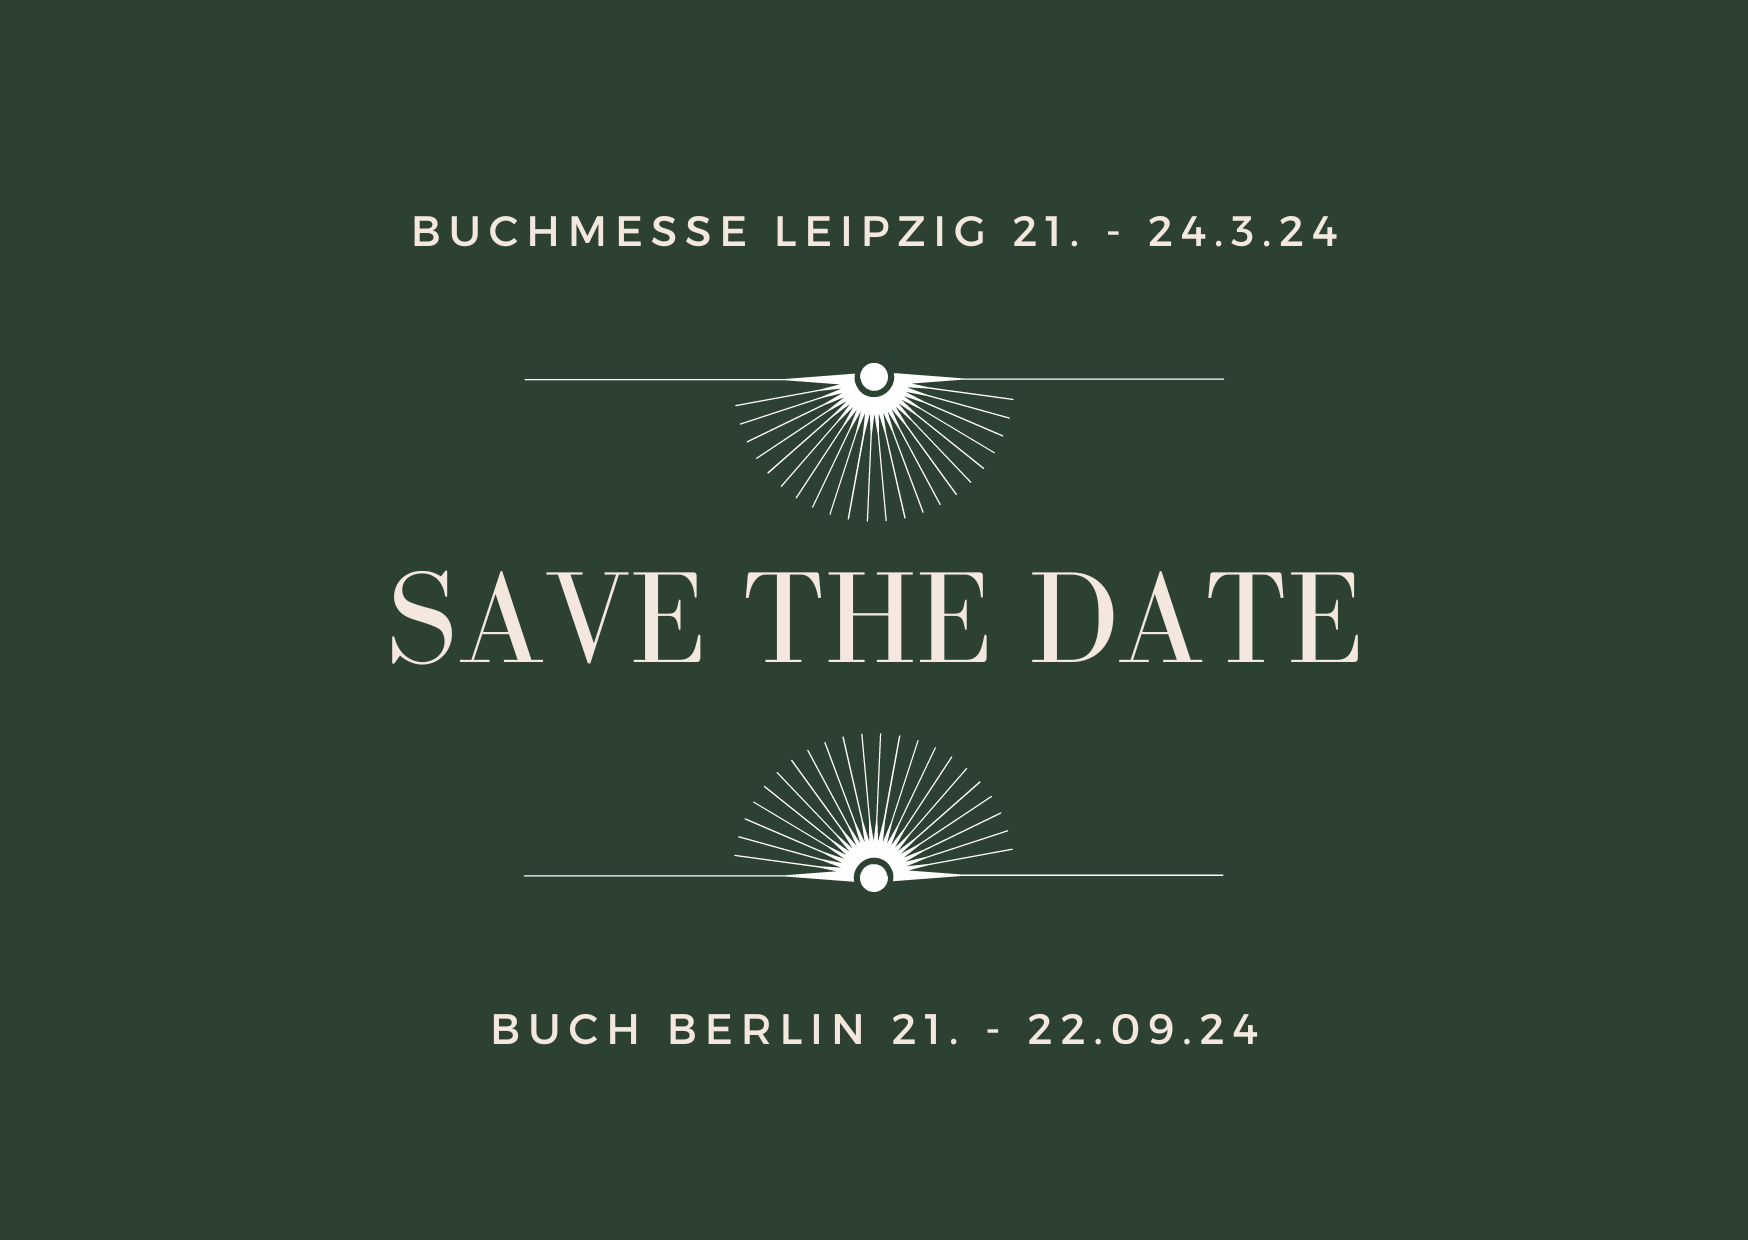 Ein Foto mit grünem Hintergrund auf dem die Daten für die Leipziger Buchmesse und die Buch Berlin für 2024 stehen